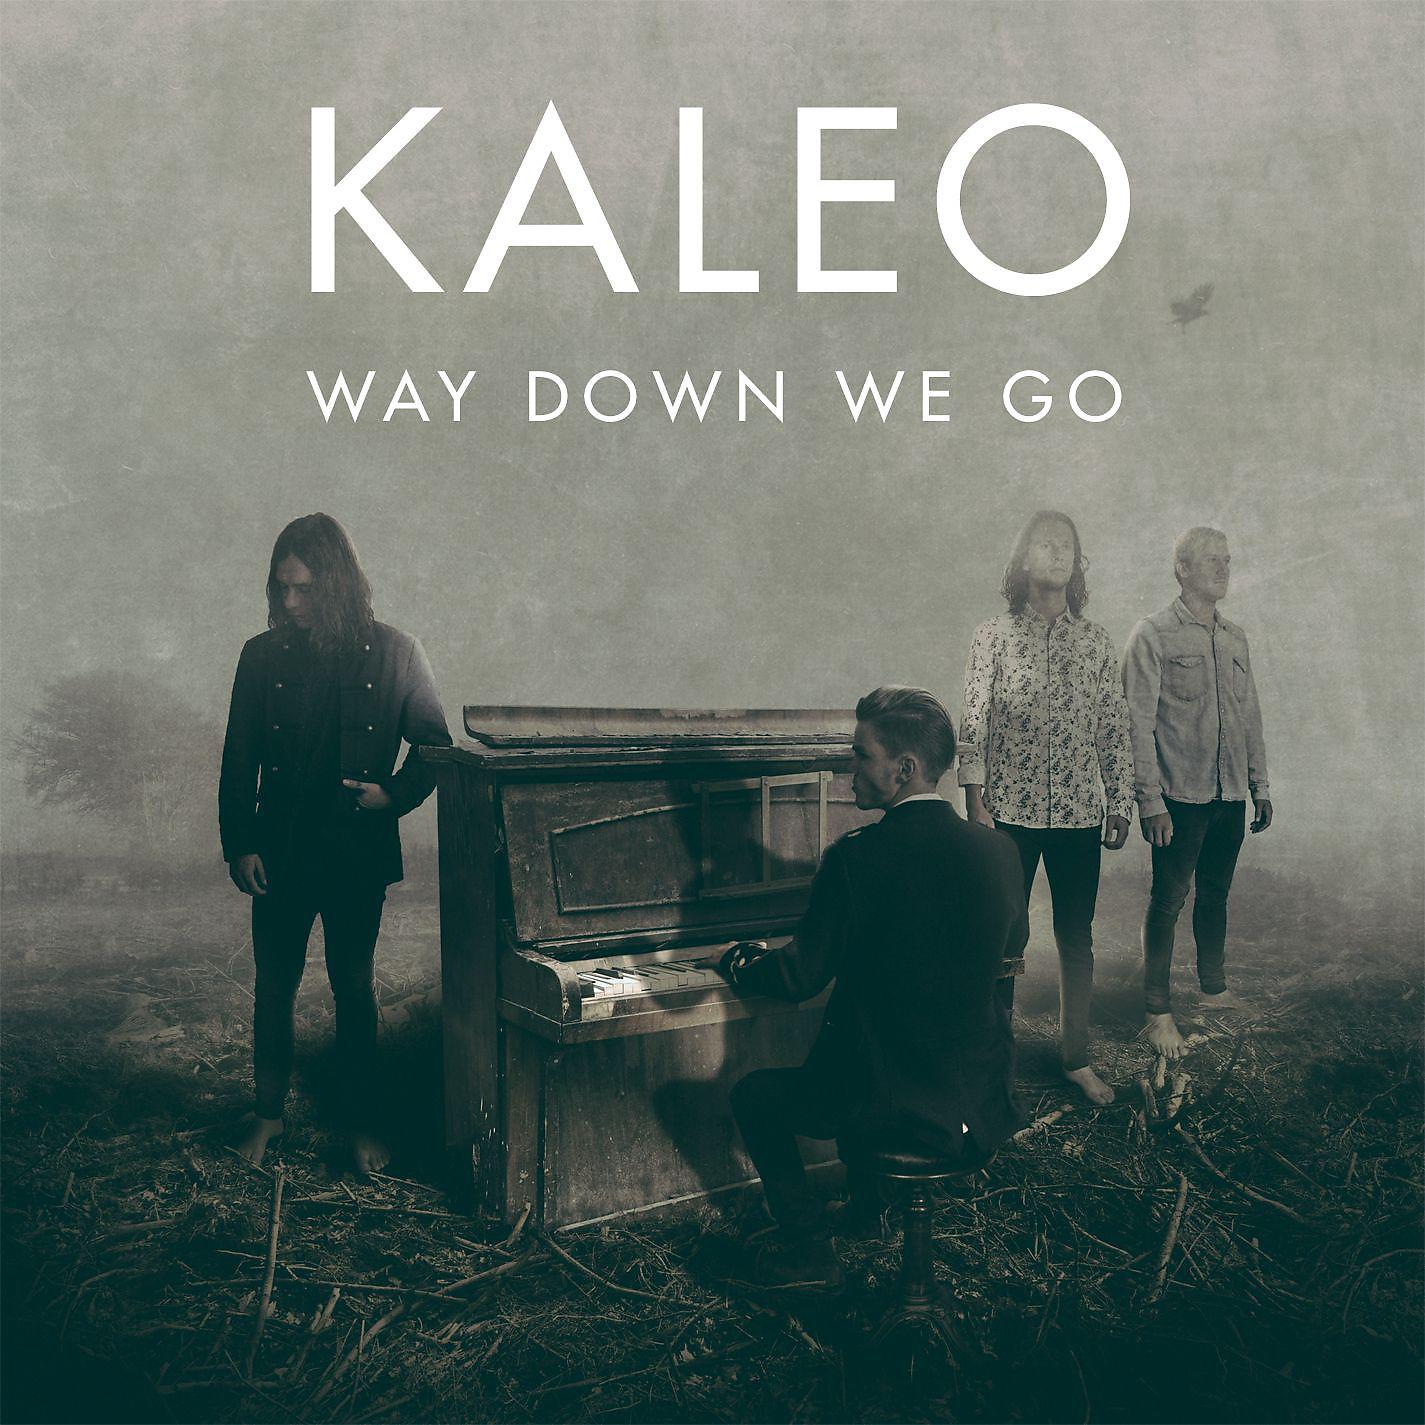 Ve down ve go. Kaleo обложка. Way down we go обложка. Kaleo way down we go. Калео way down we.